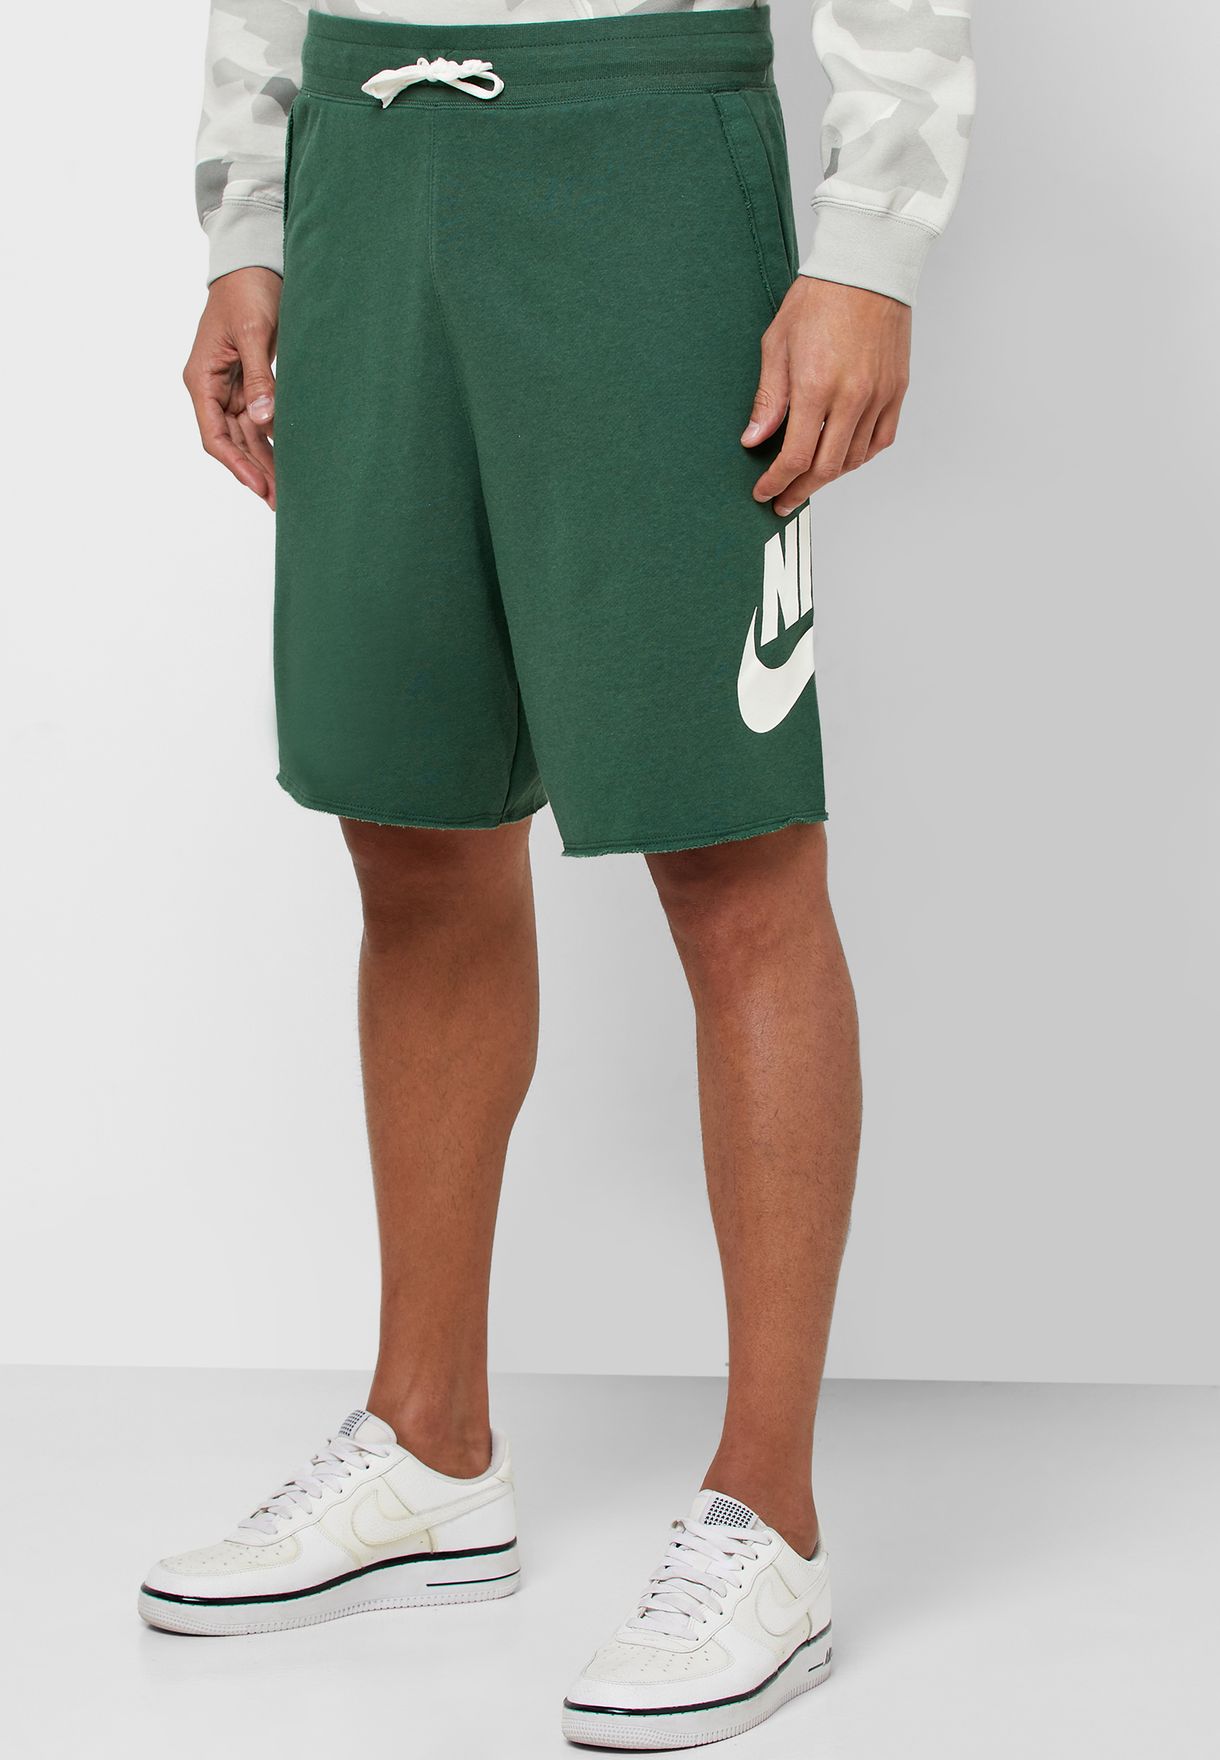 mens nike shorts green